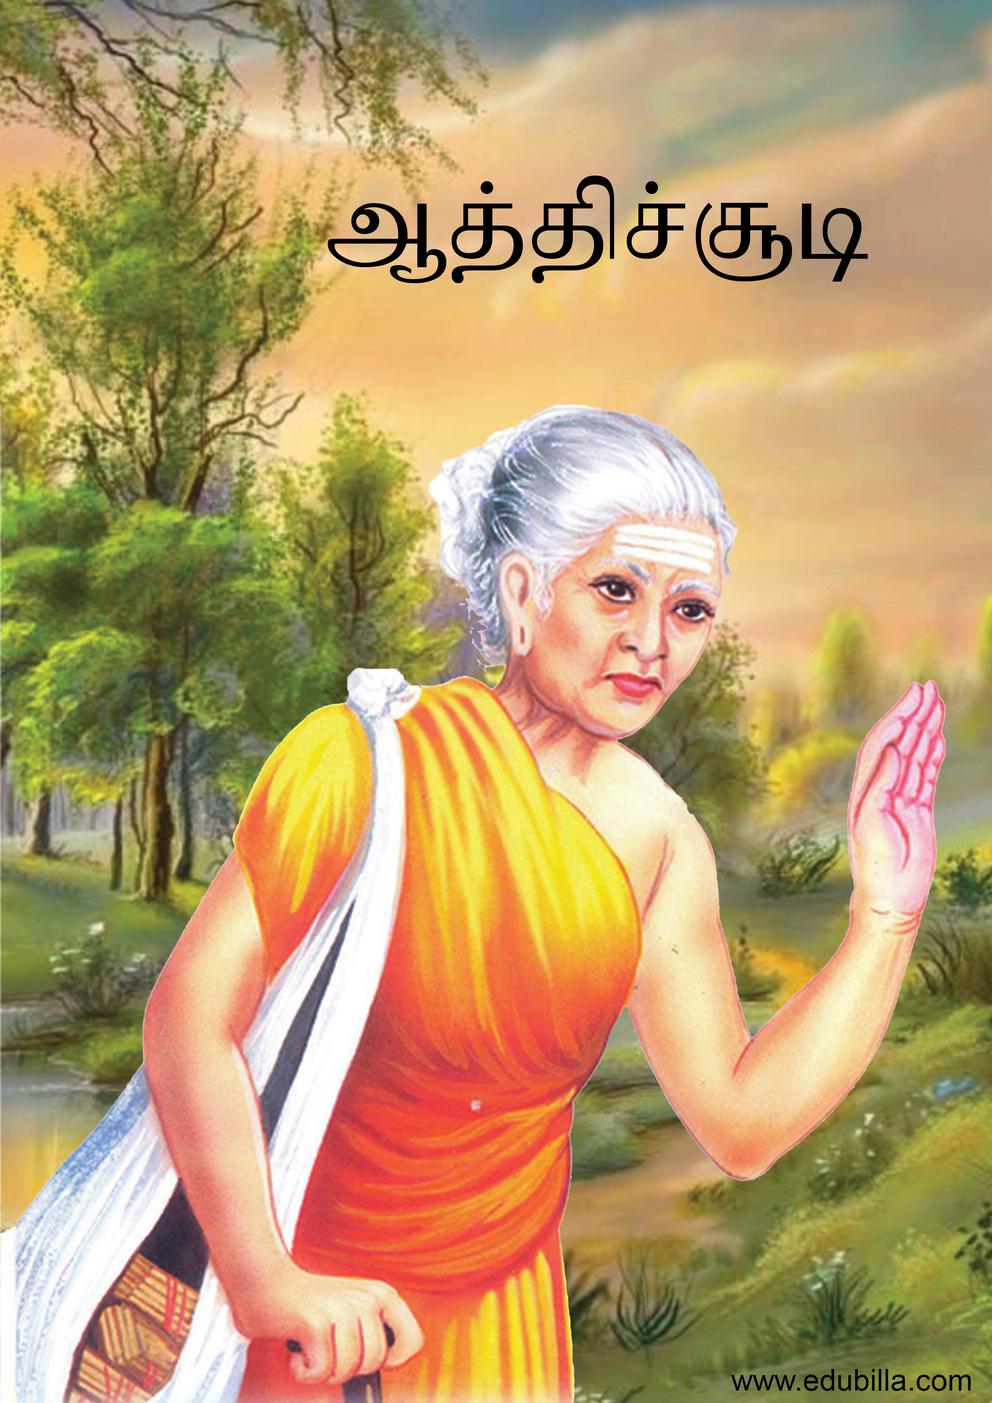 Aathichudi - ஆத்திசூடி by Ongarakudil books - Issuu